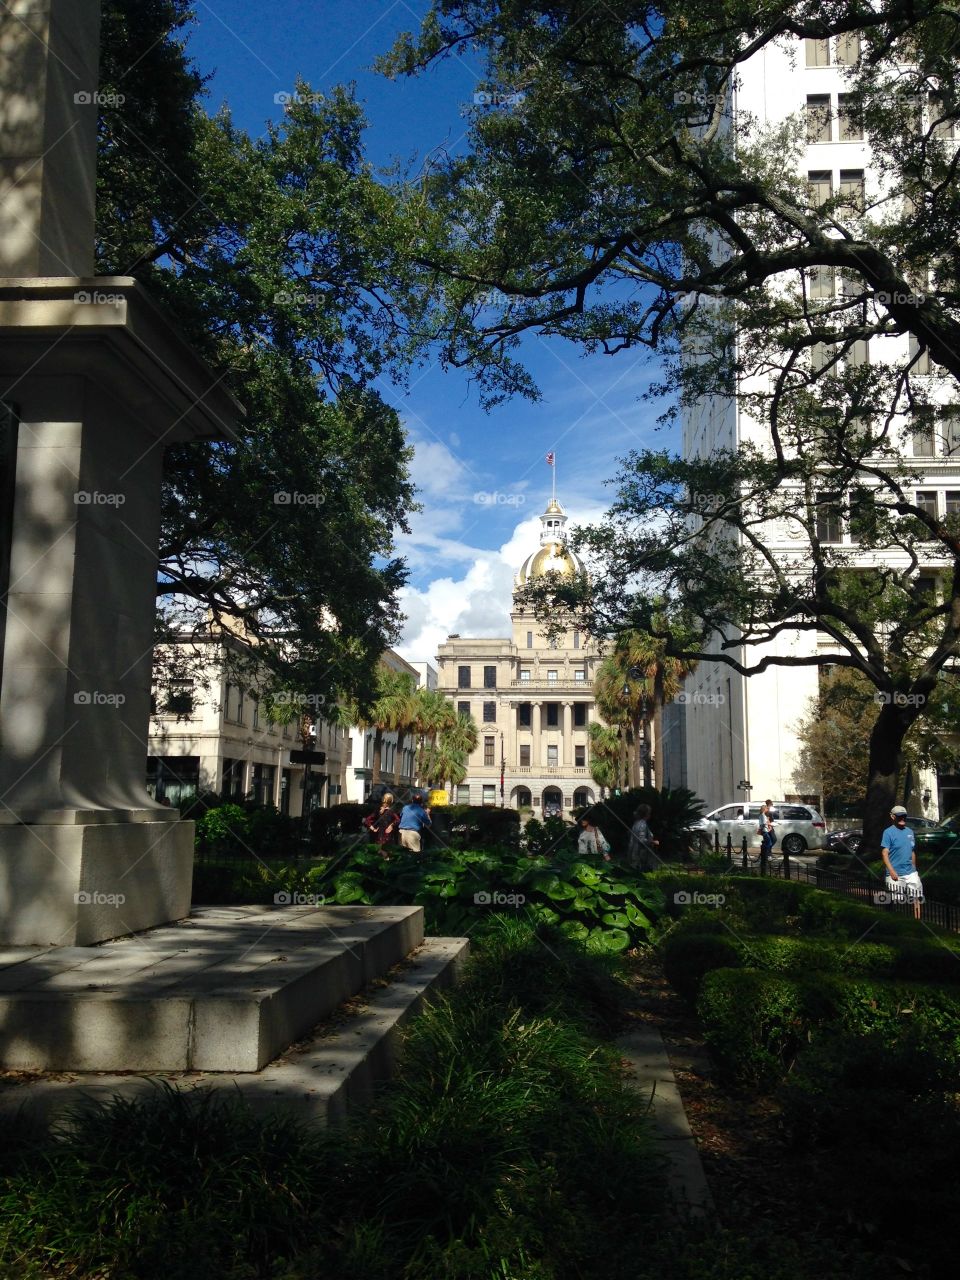 Savannah Square 